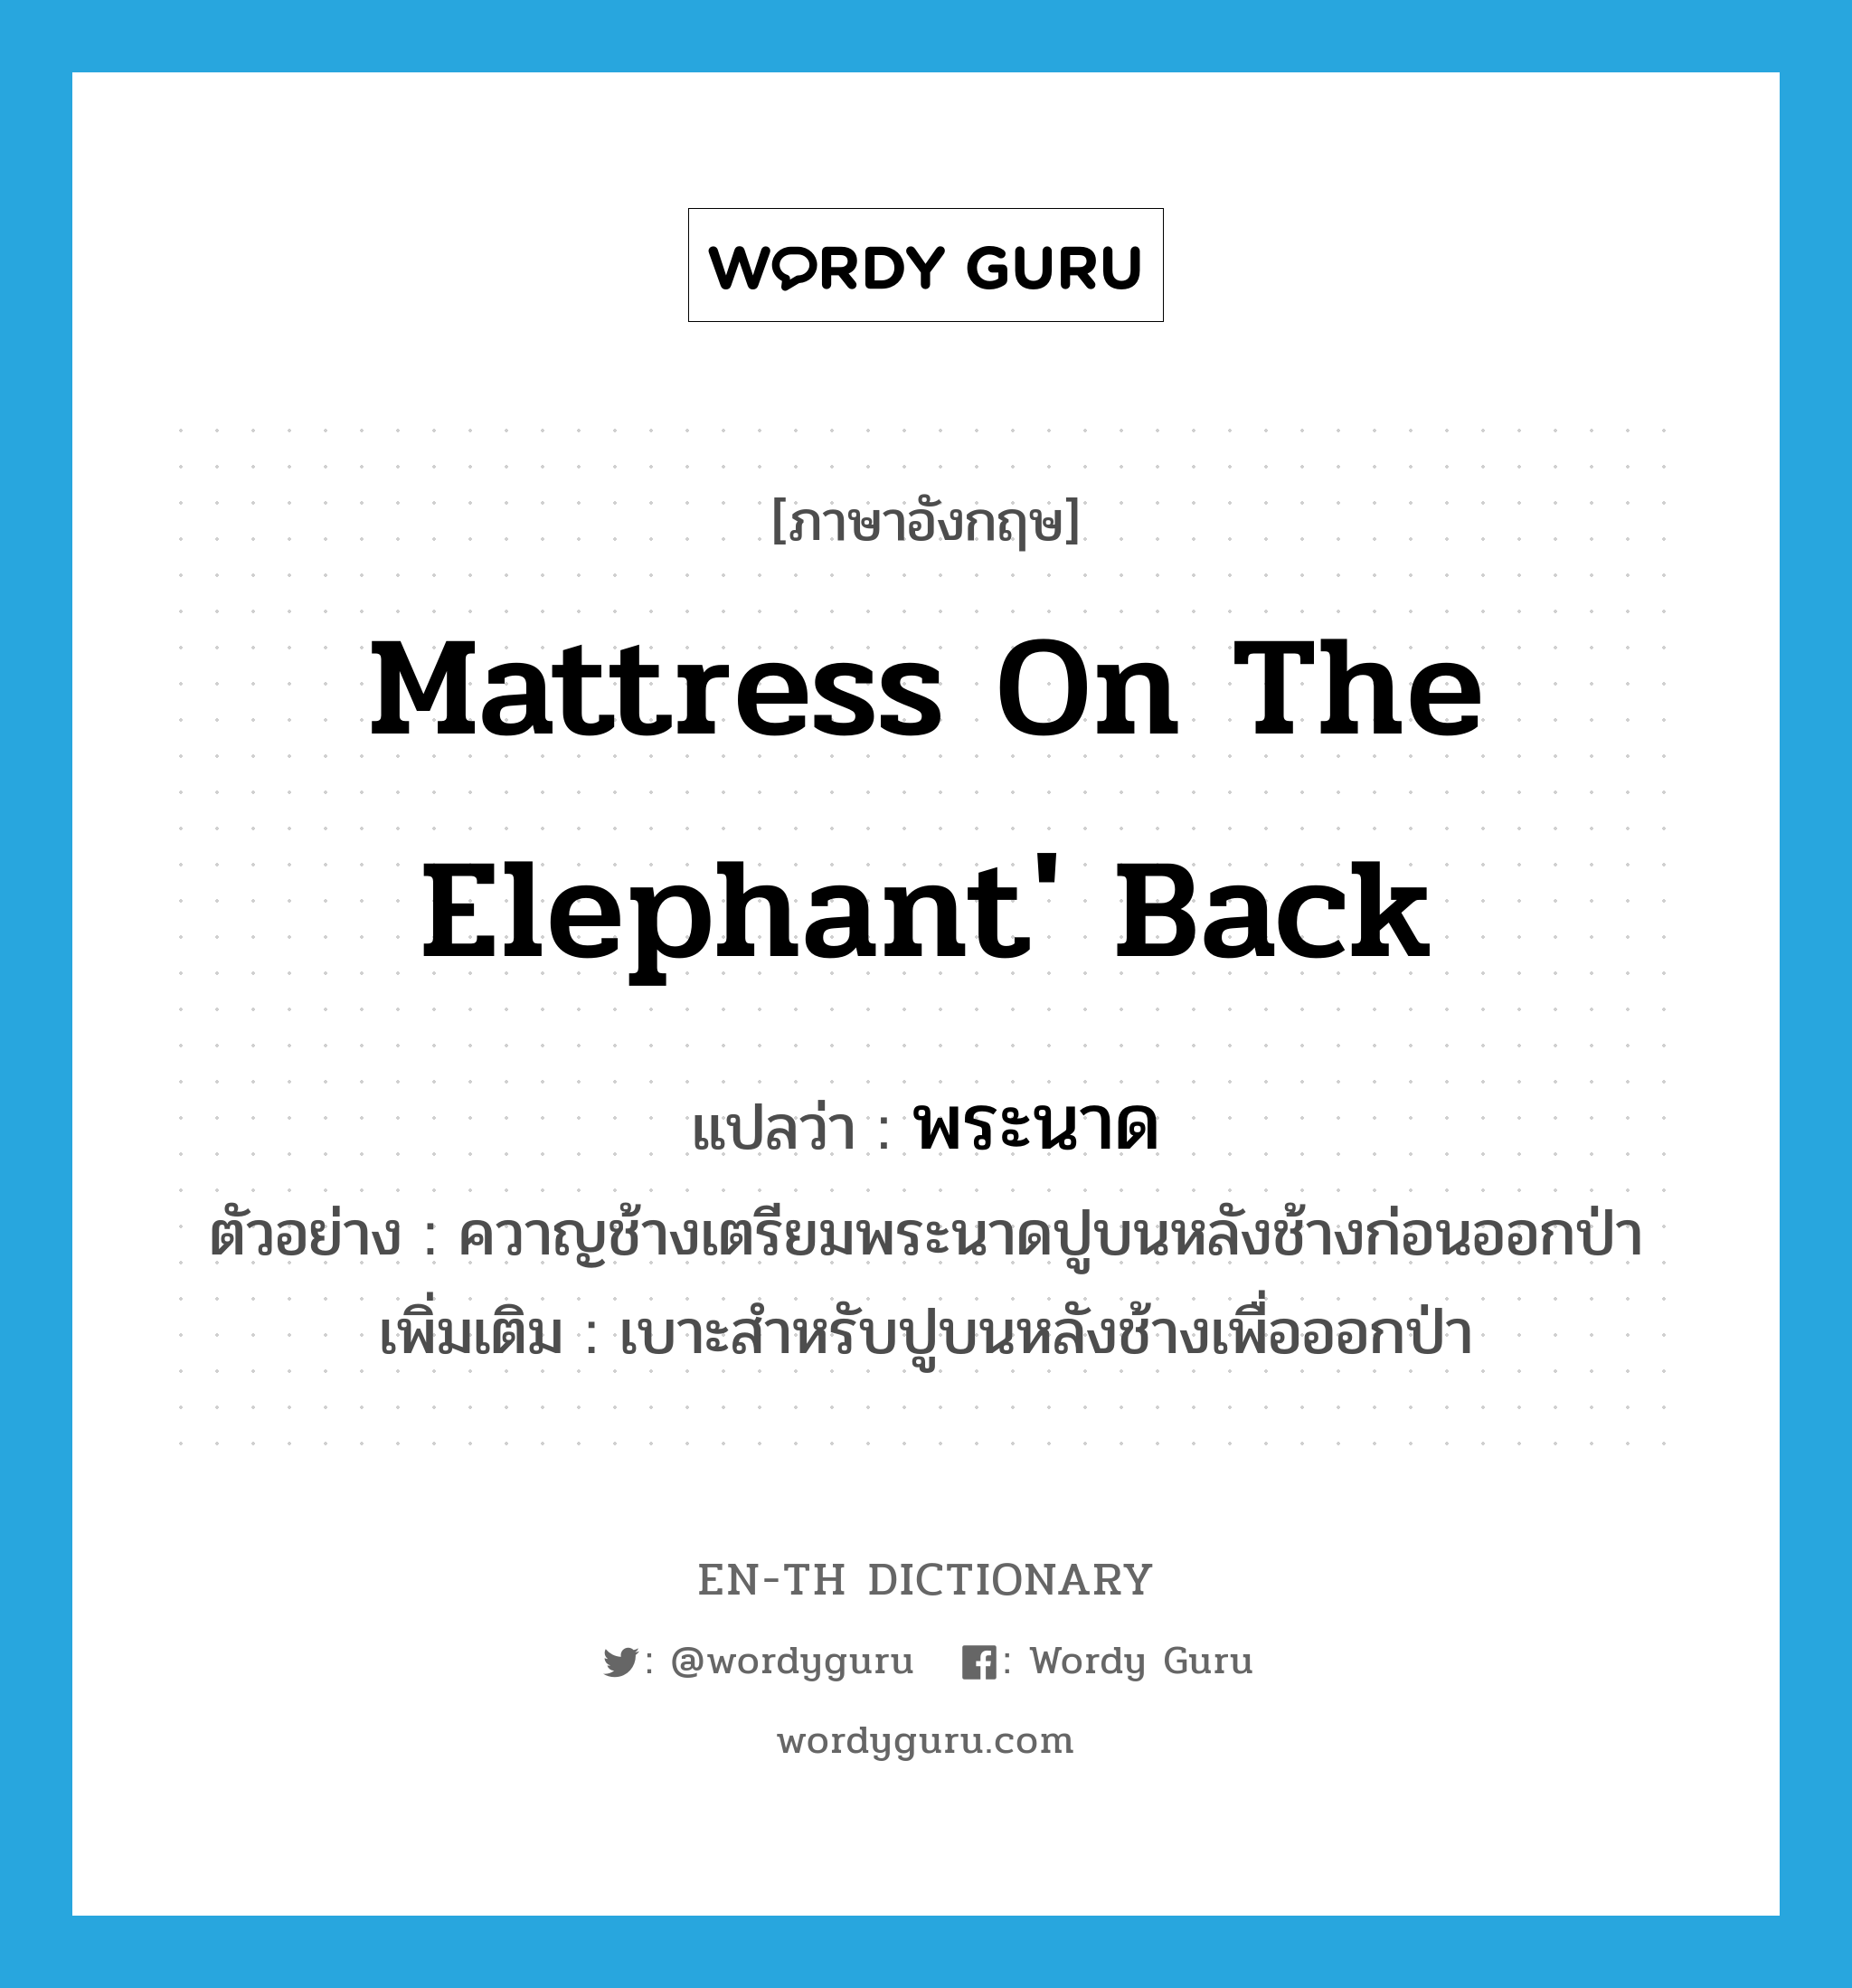 mattress on the elephant' back แปลว่า?, คำศัพท์ภาษาอังกฤษ mattress on the elephant' back แปลว่า พระนาด ประเภท N ตัวอย่าง ควาญช้างเตรียมพระนาดปูบนหลังช้างก่อนออกป่า เพิ่มเติม เบาะสำหรับปูบนหลังช้างเพื่อออกป่า หมวด N